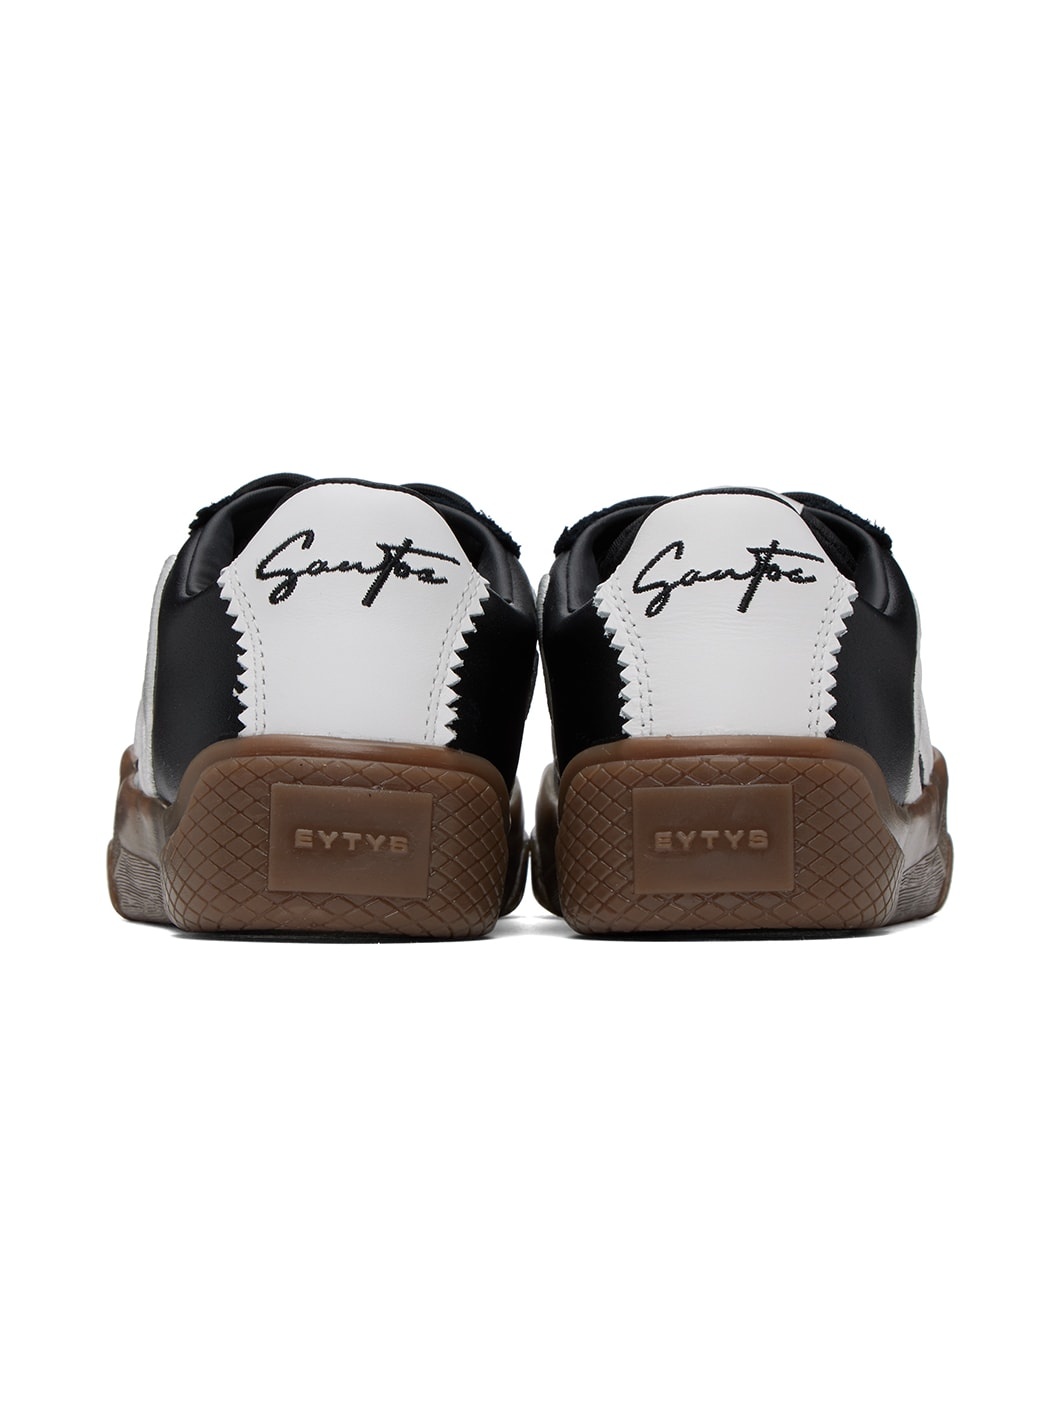 Black & White Santos Sneakers - 2